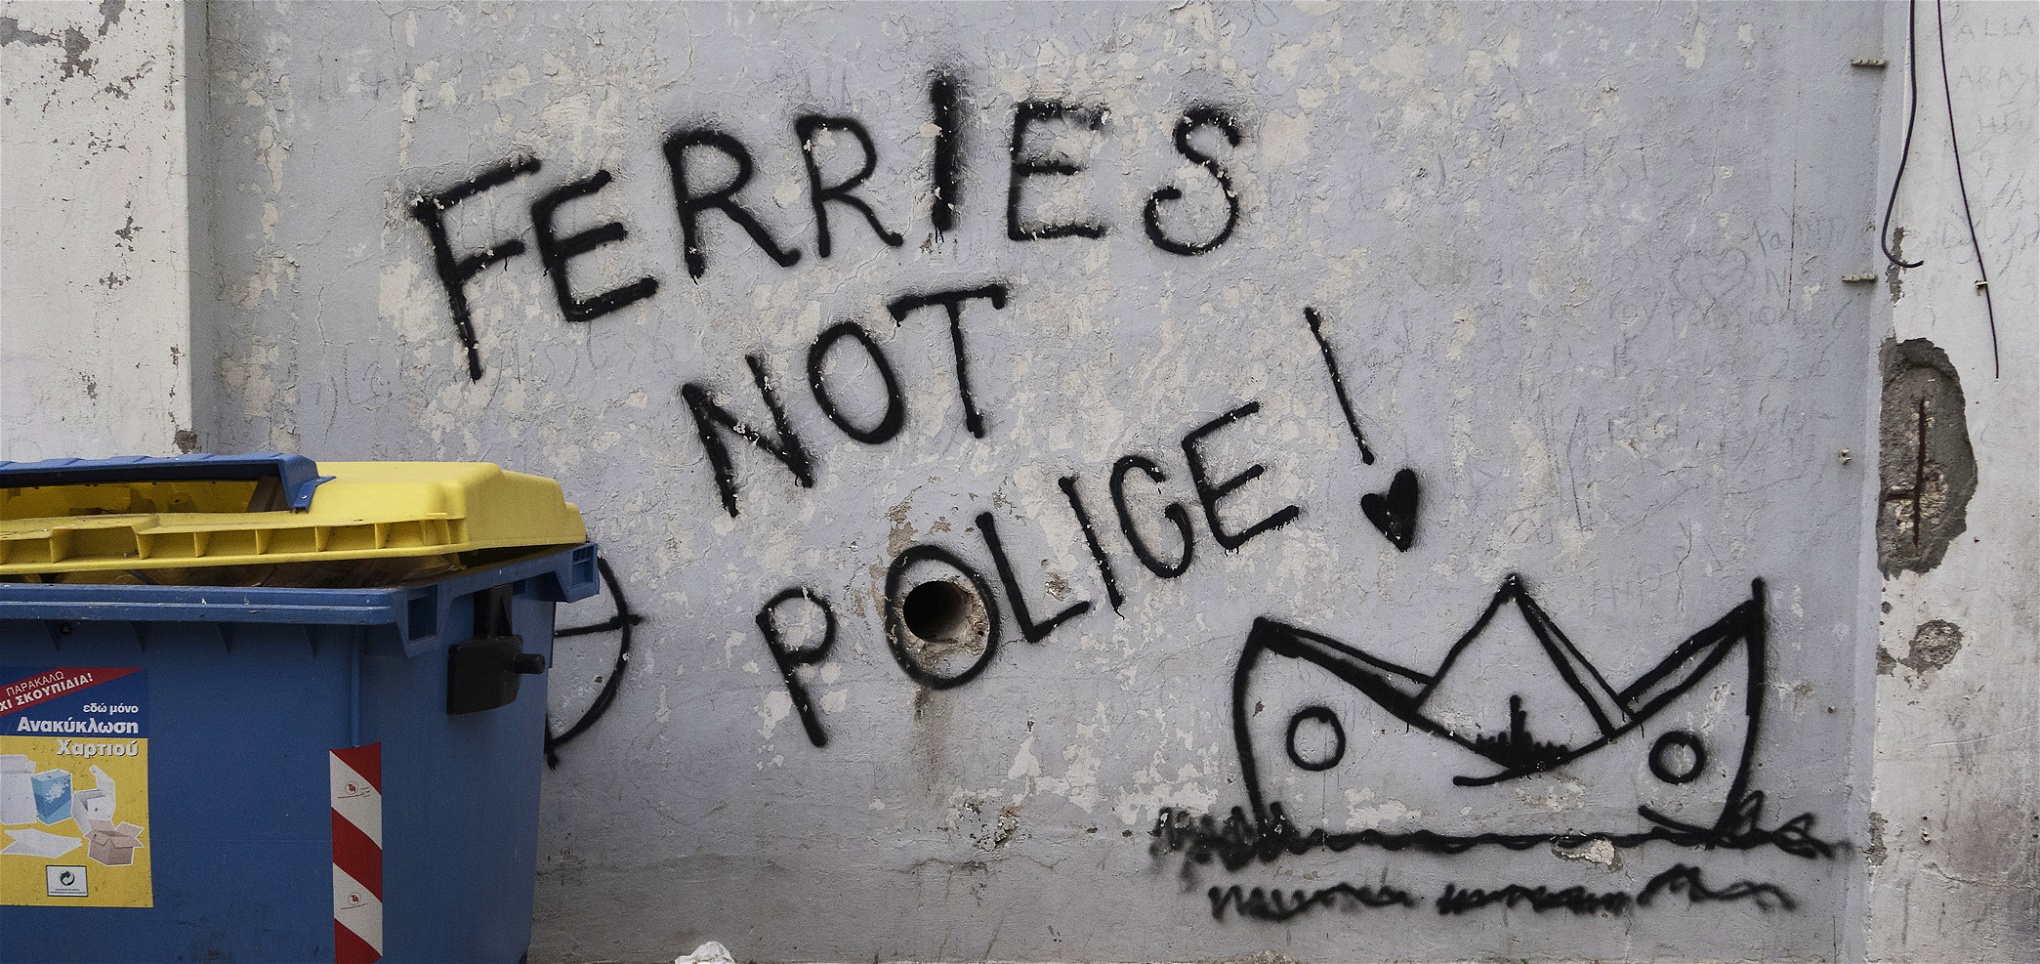 Graffiti i Patras. Många har vittnat om våldsamheter från polisens sida mot migranterna.